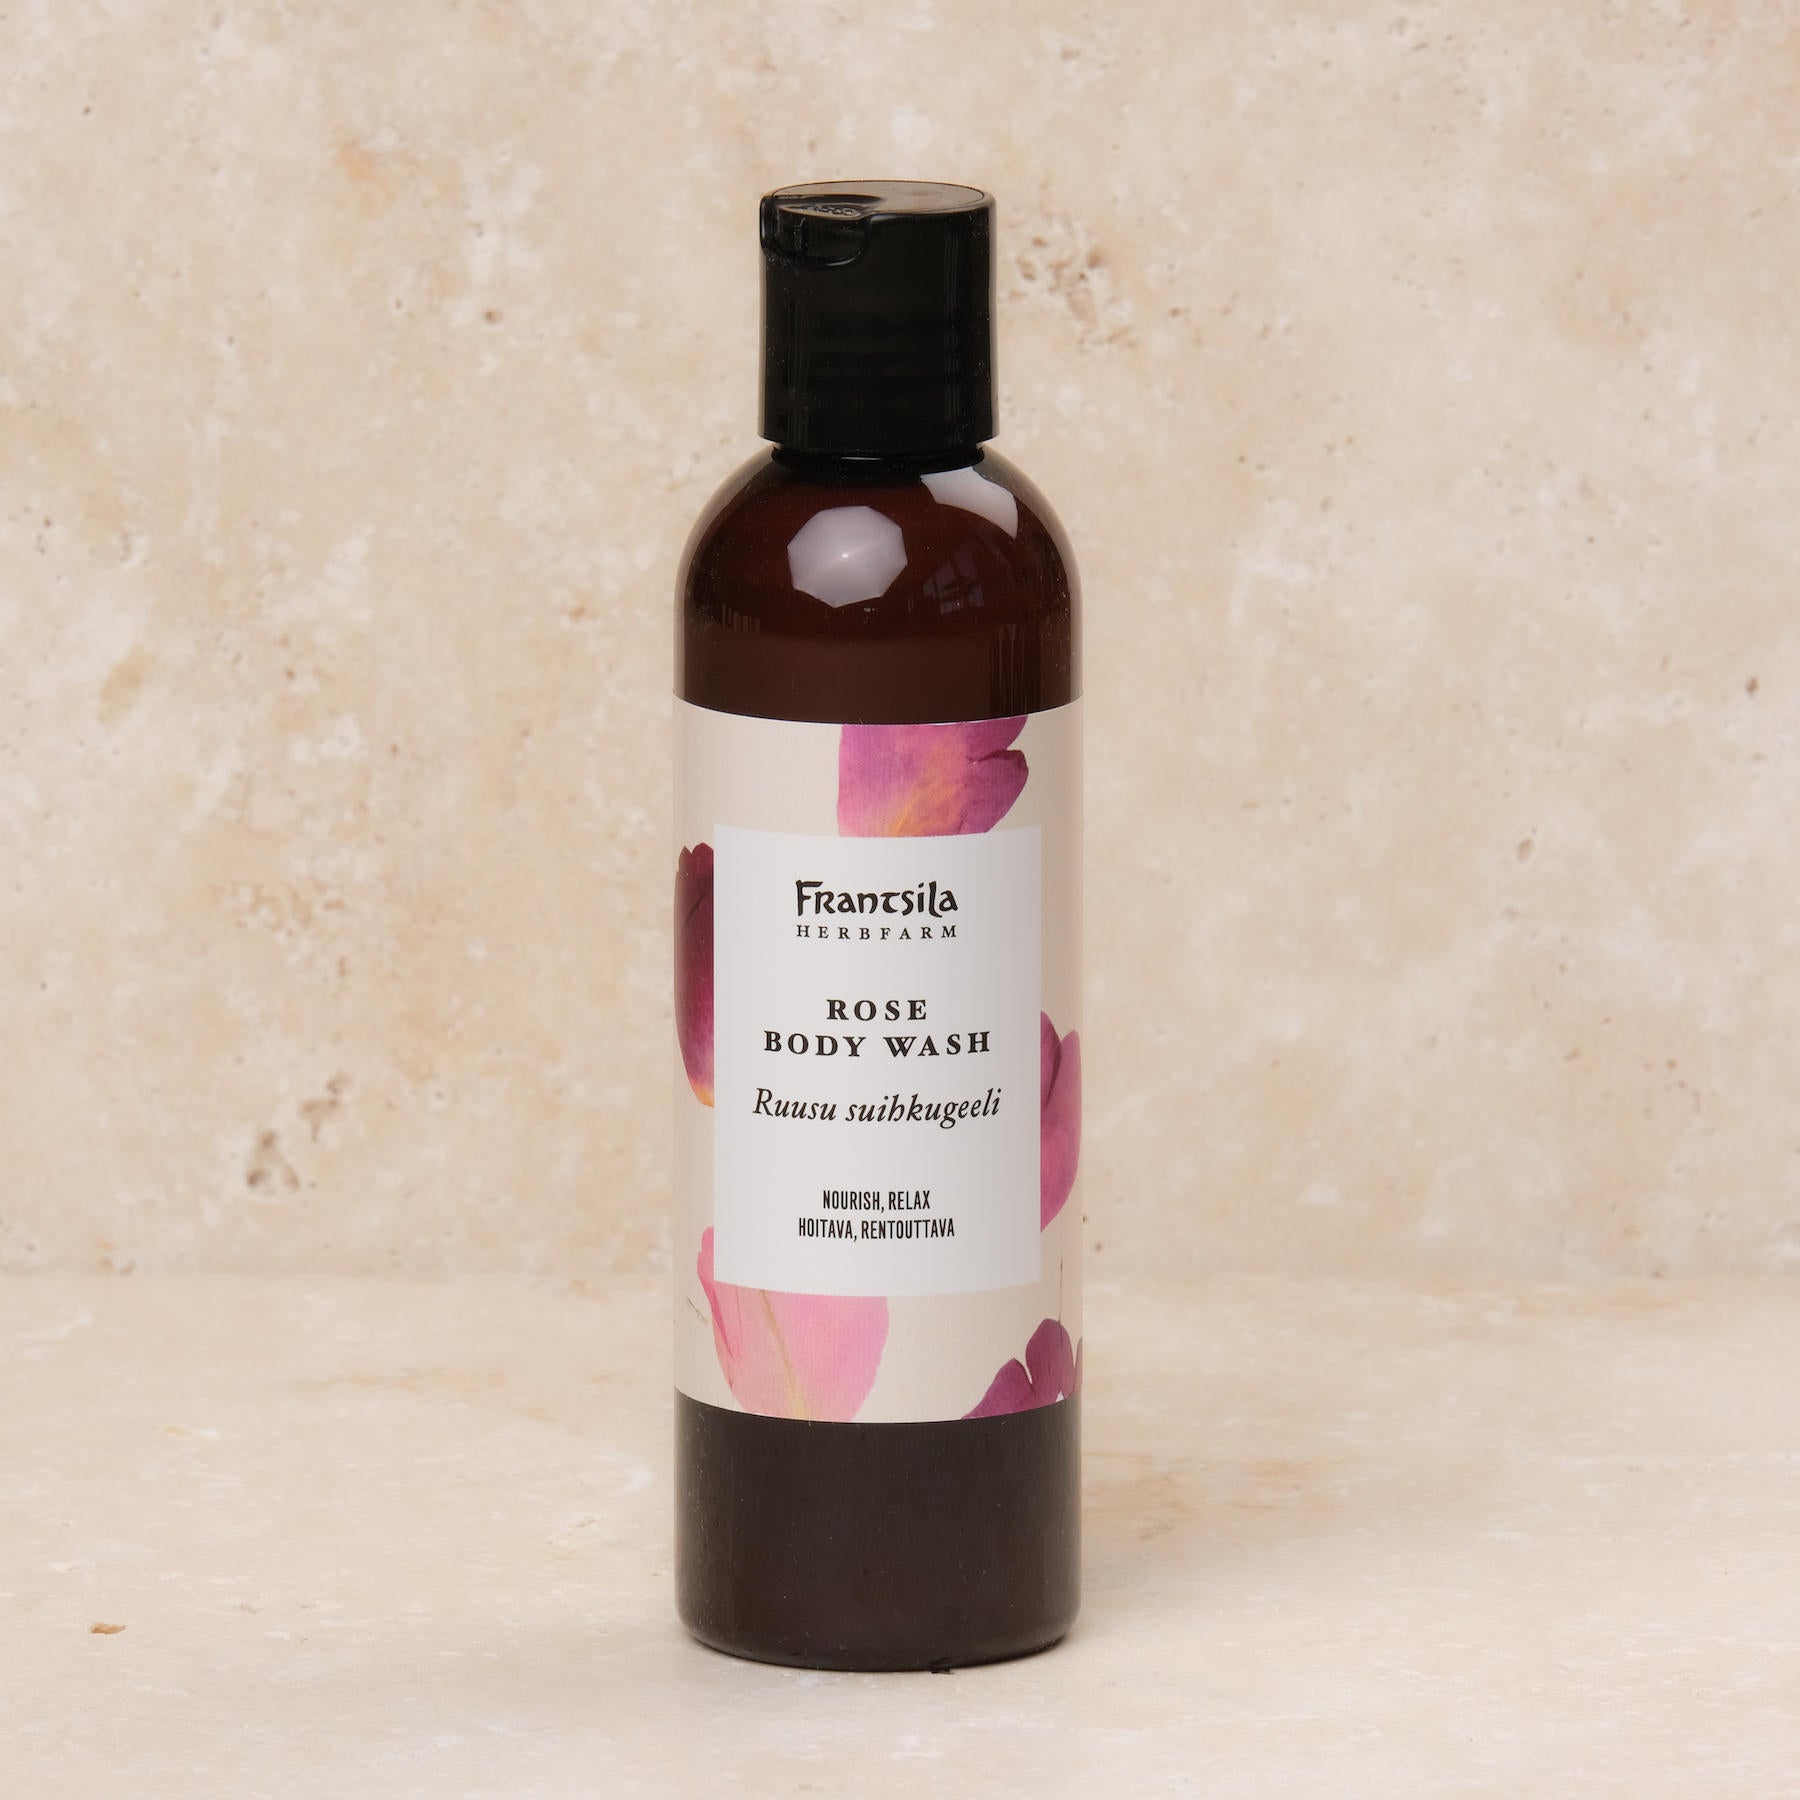 Ce gel douche bienfaisant Midsummer Rose de la marque de cosmétiques naturels Frantsila nettoie la peau en douceur mais en profondeur. Avec un pH de 5,5, il ne dessèche pas la peau et convient à toute la famille !